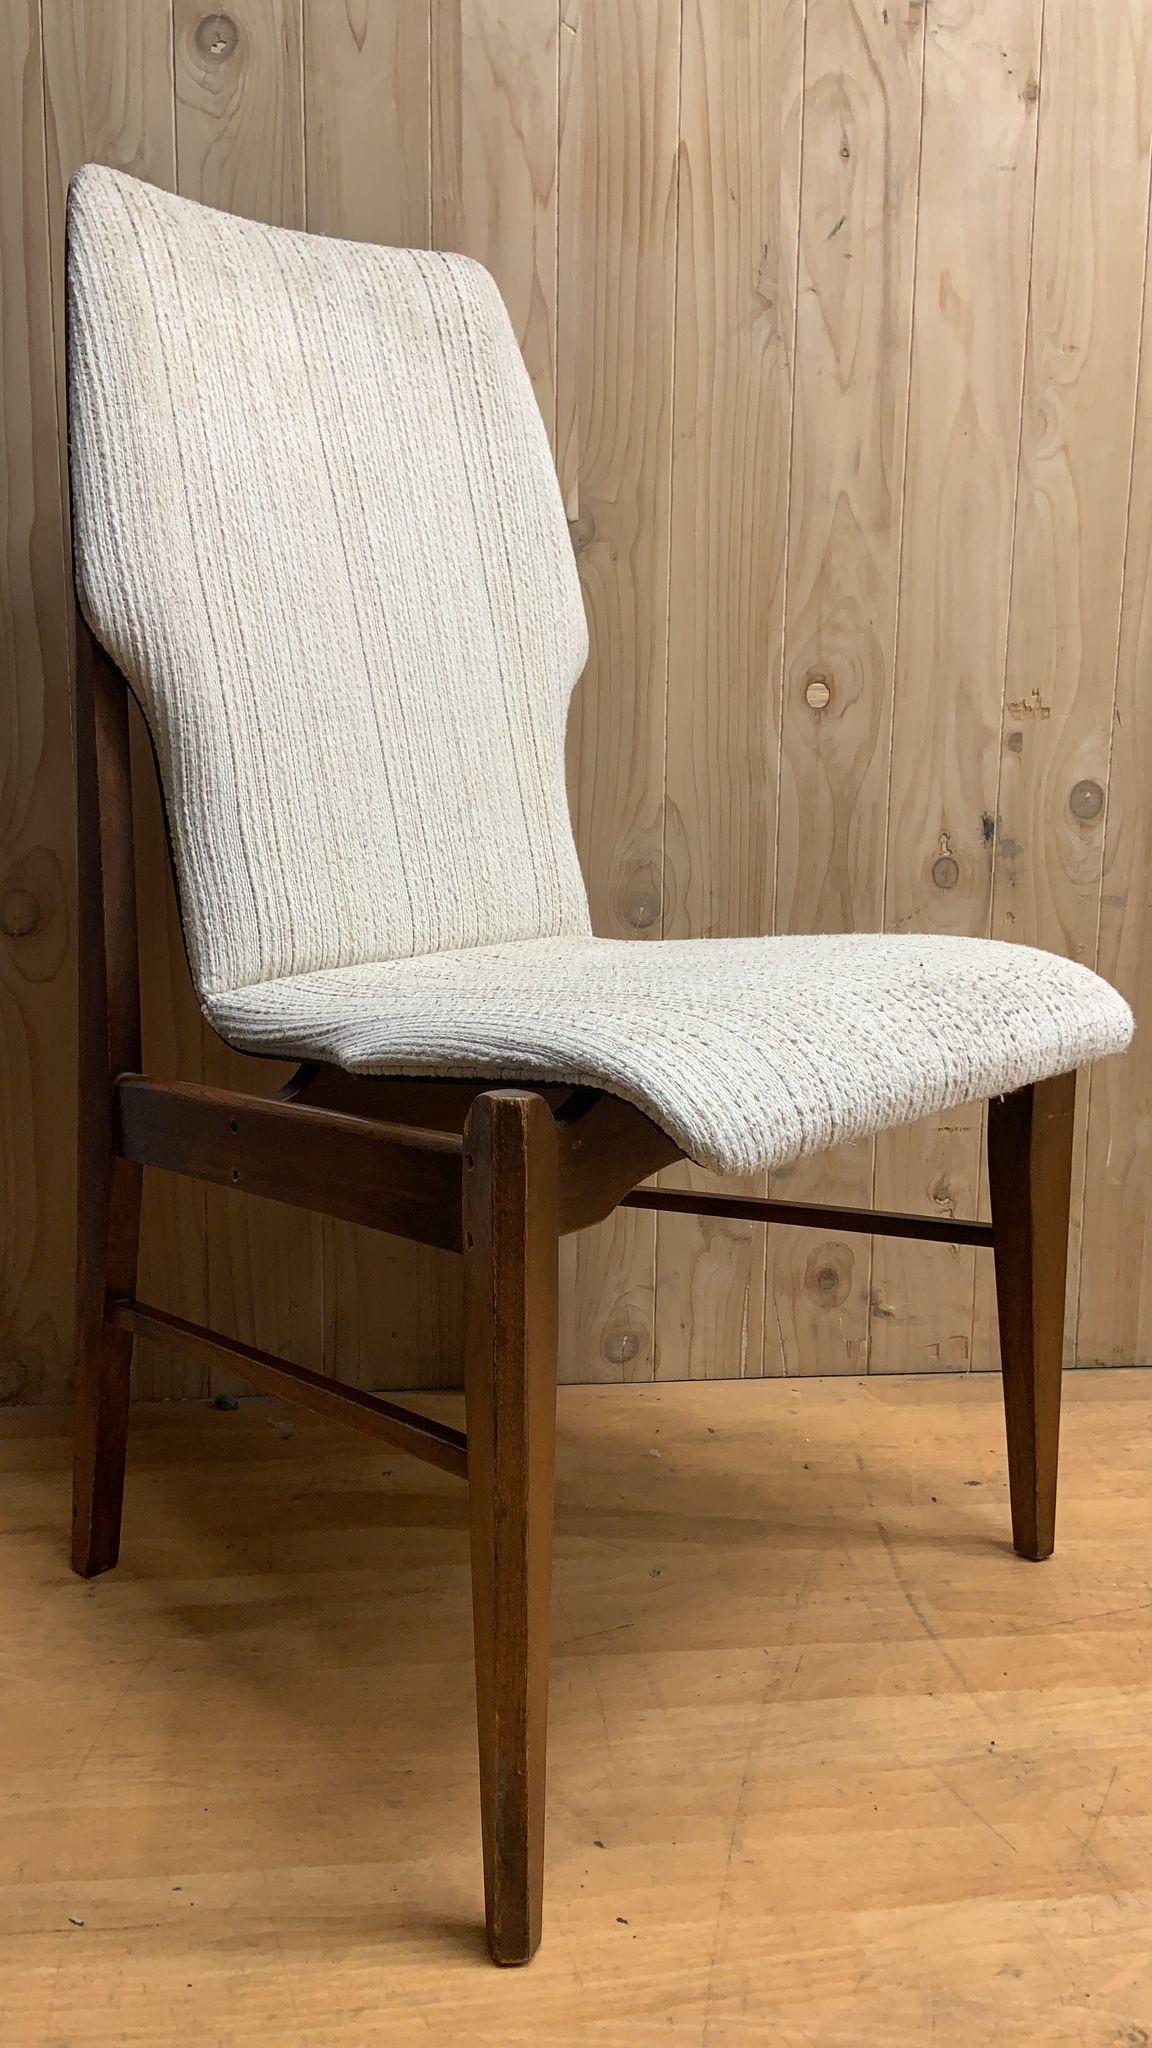 MCM Arne Vodder for Lane Furniture Walnut High Back Dining Chairs - Set of 4 For Sale 2